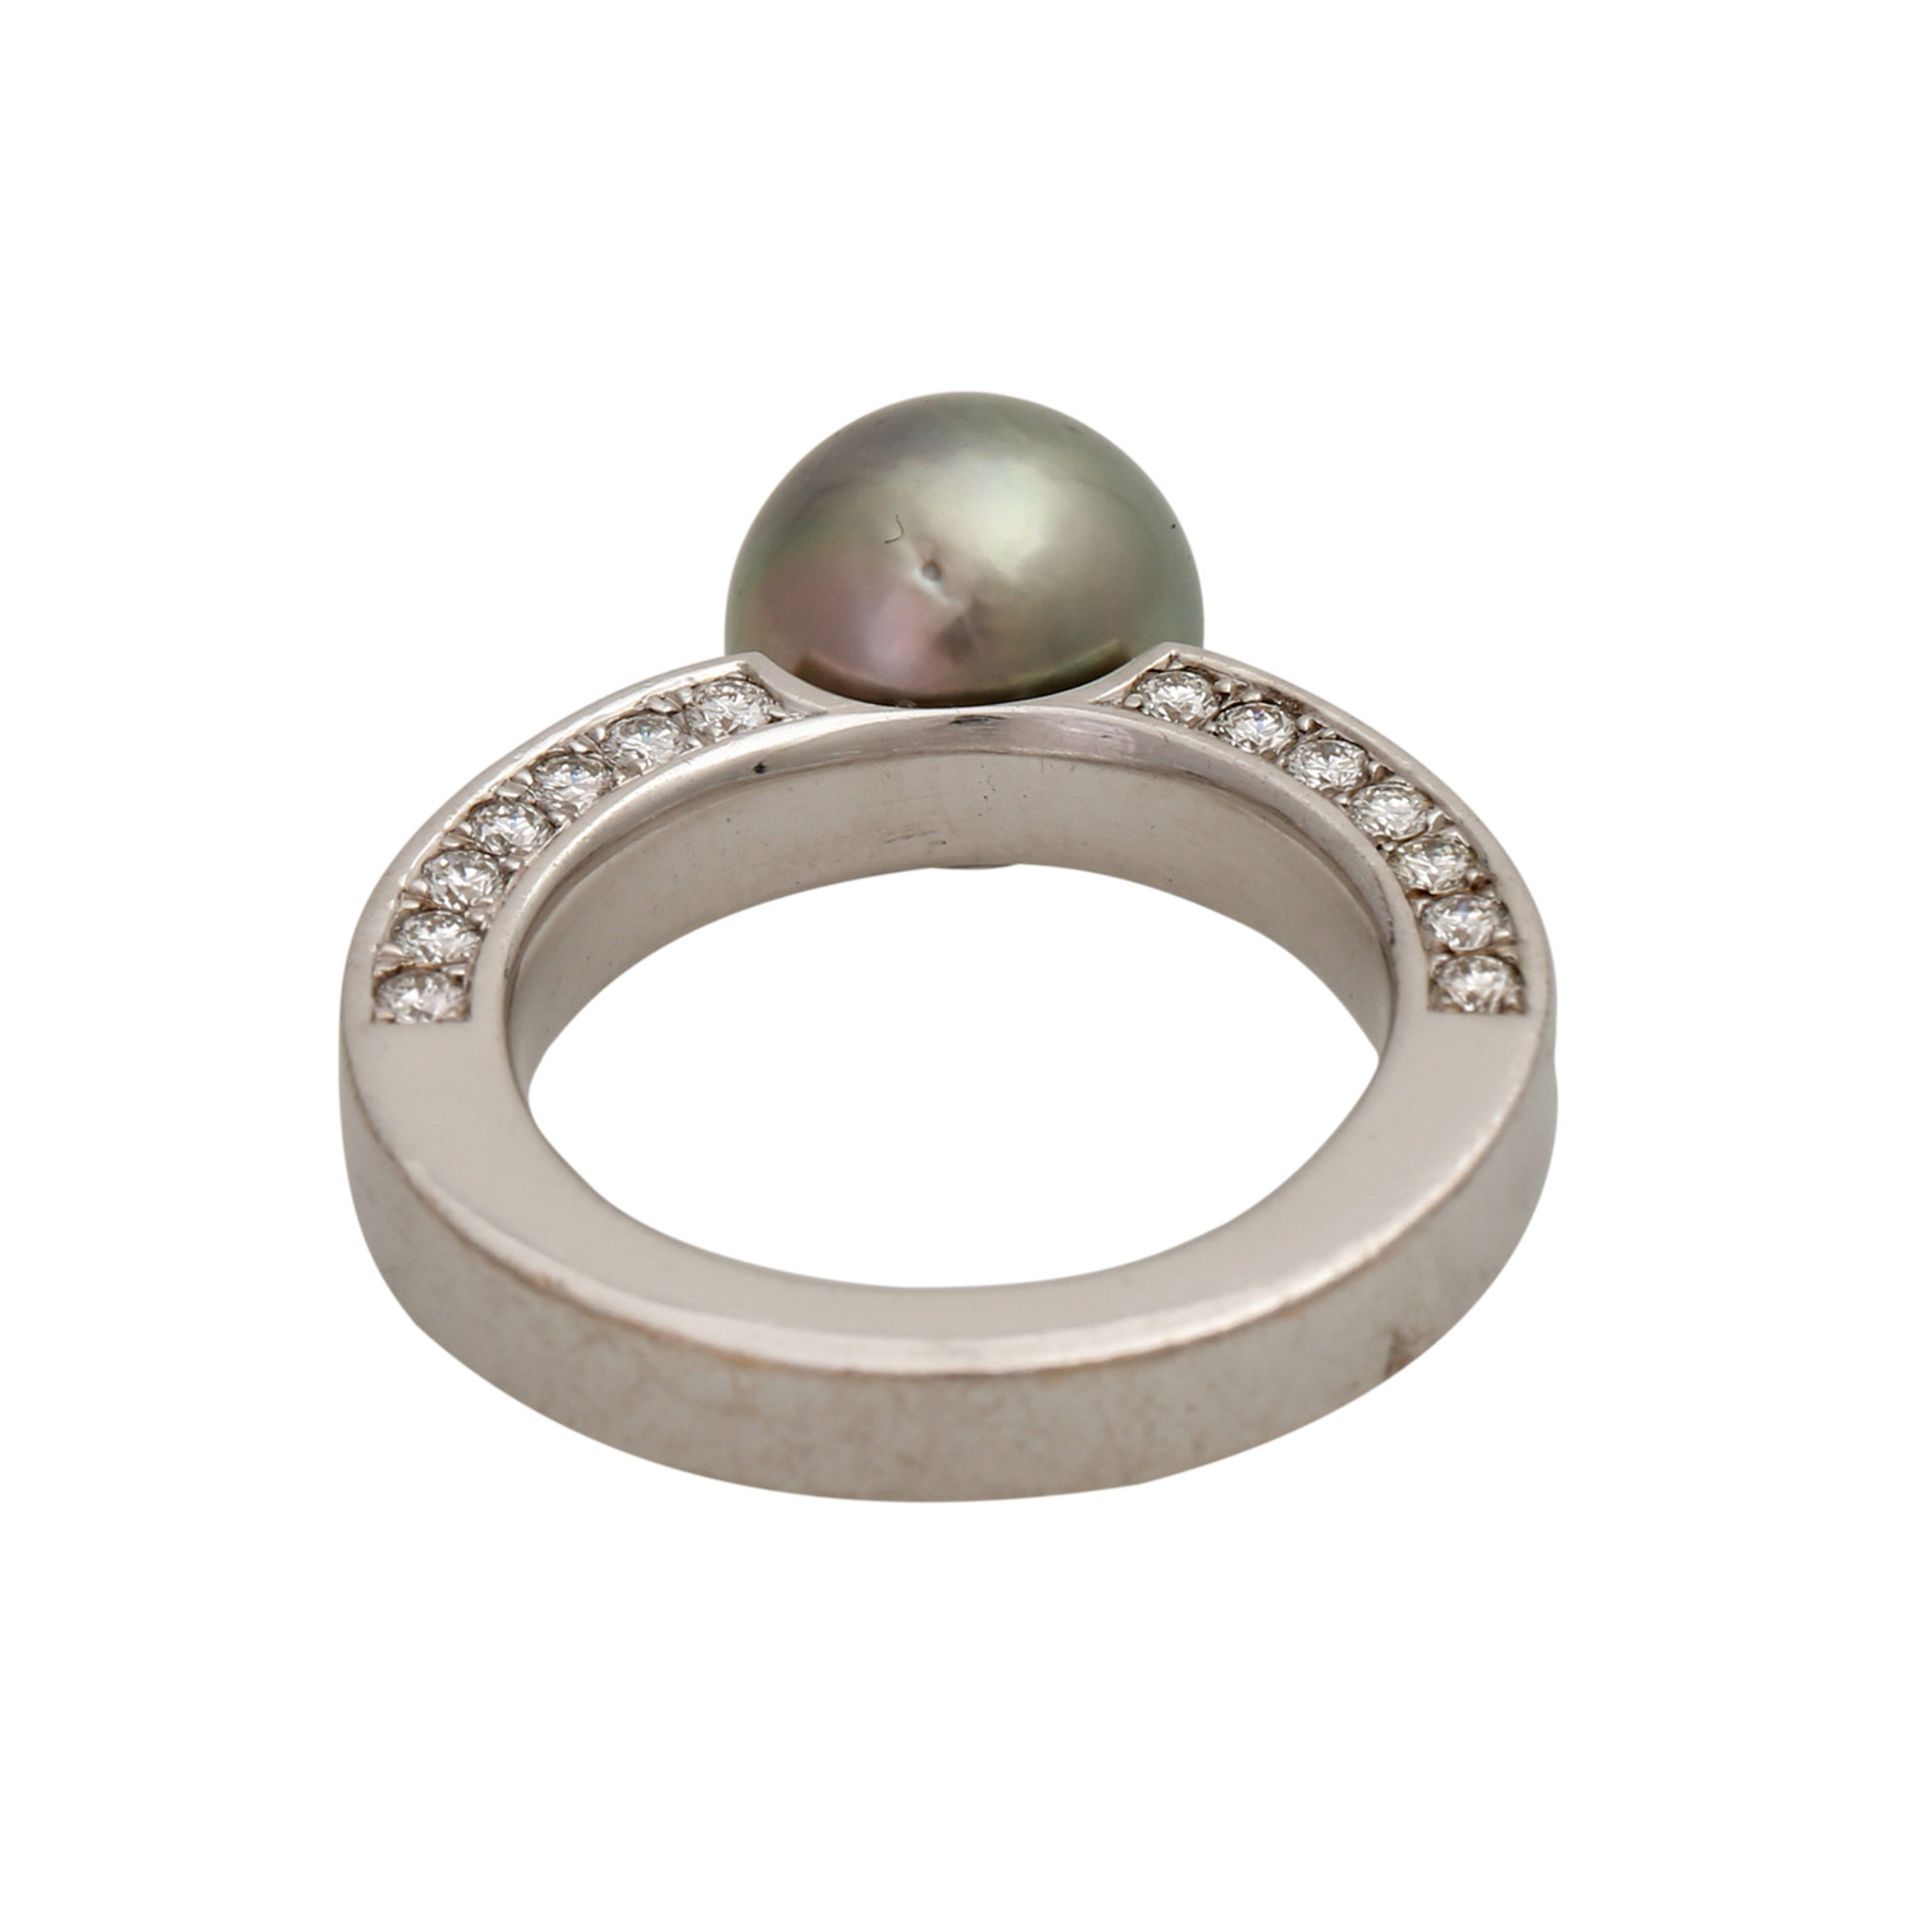 Ring mit grauer Tahitizuchtperle und 42 Brillanten, zus. ca. 1,26 ct, FW - GW (G - K) / VVS - VS, WG - Image 4 of 5